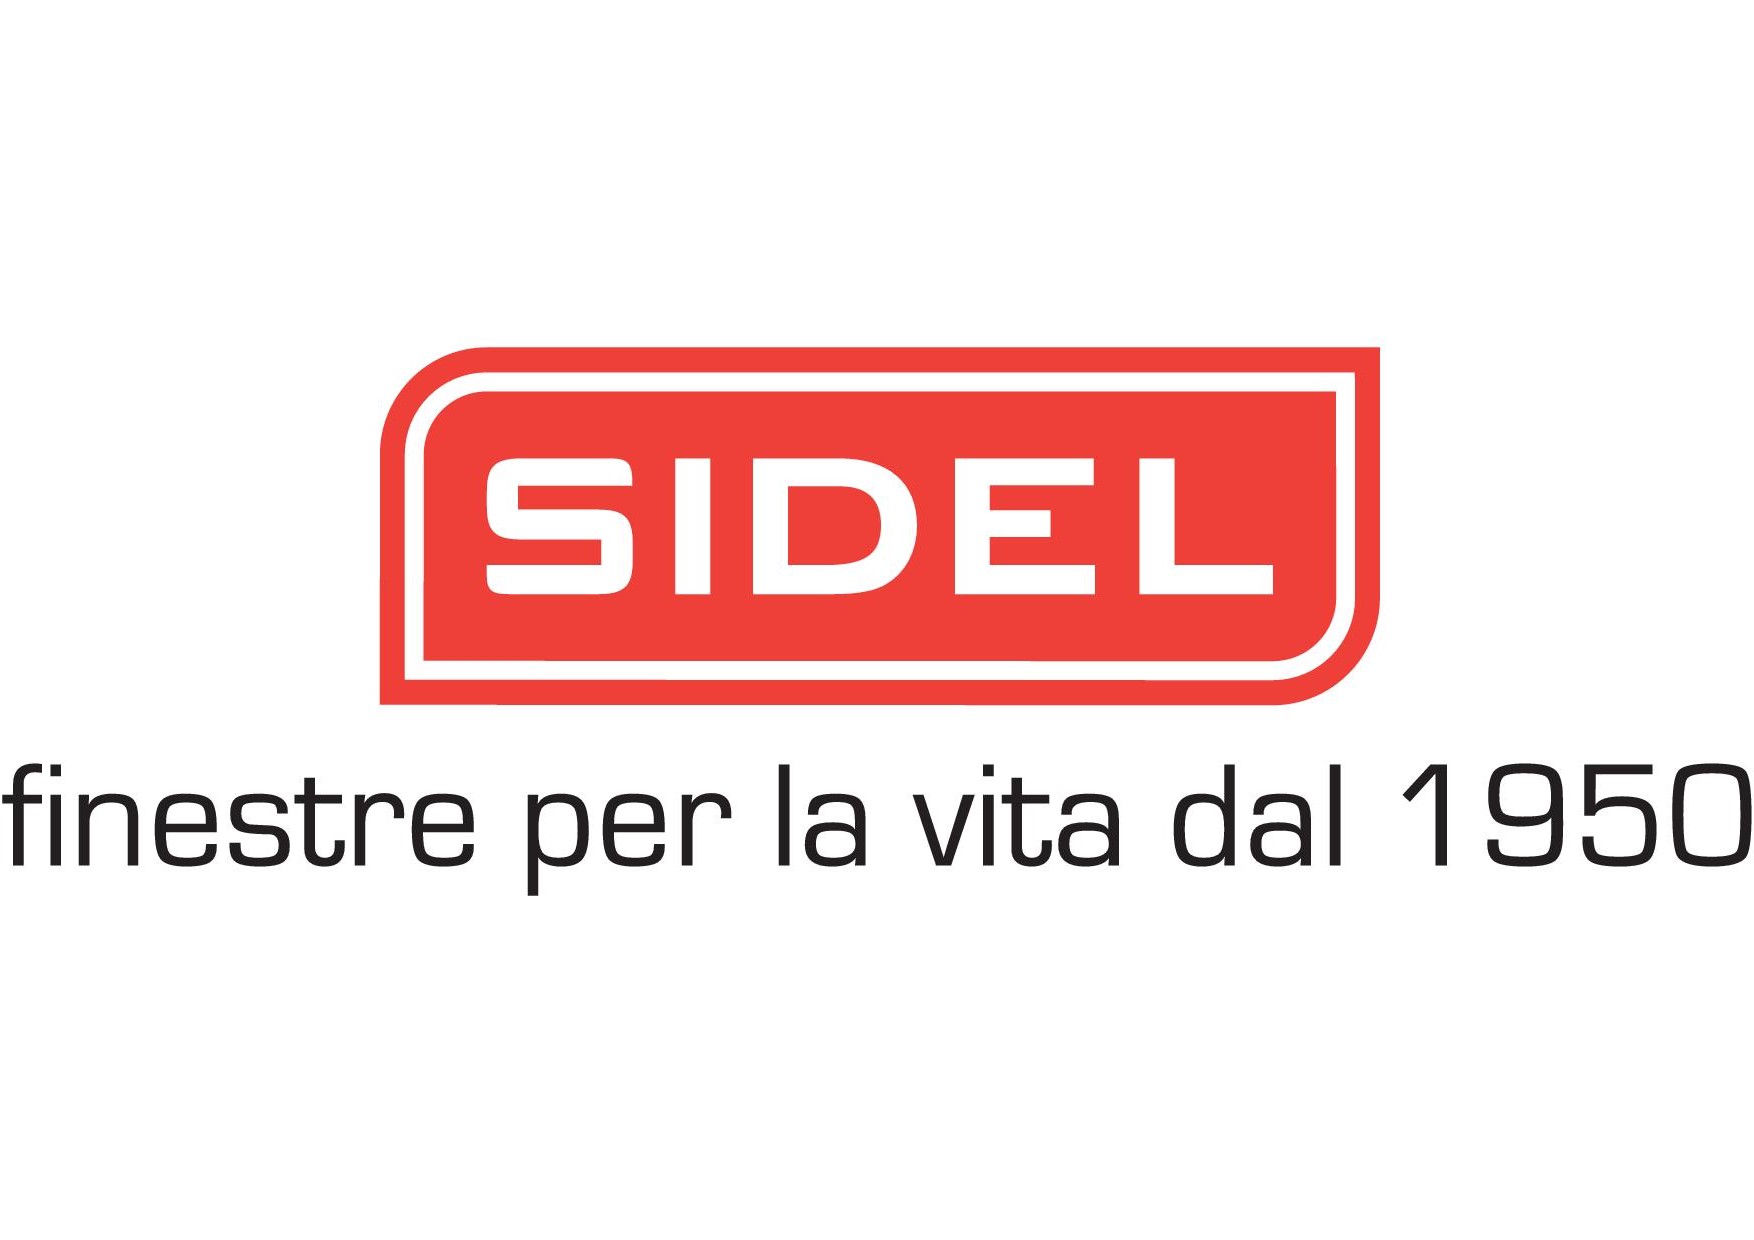 Sidel